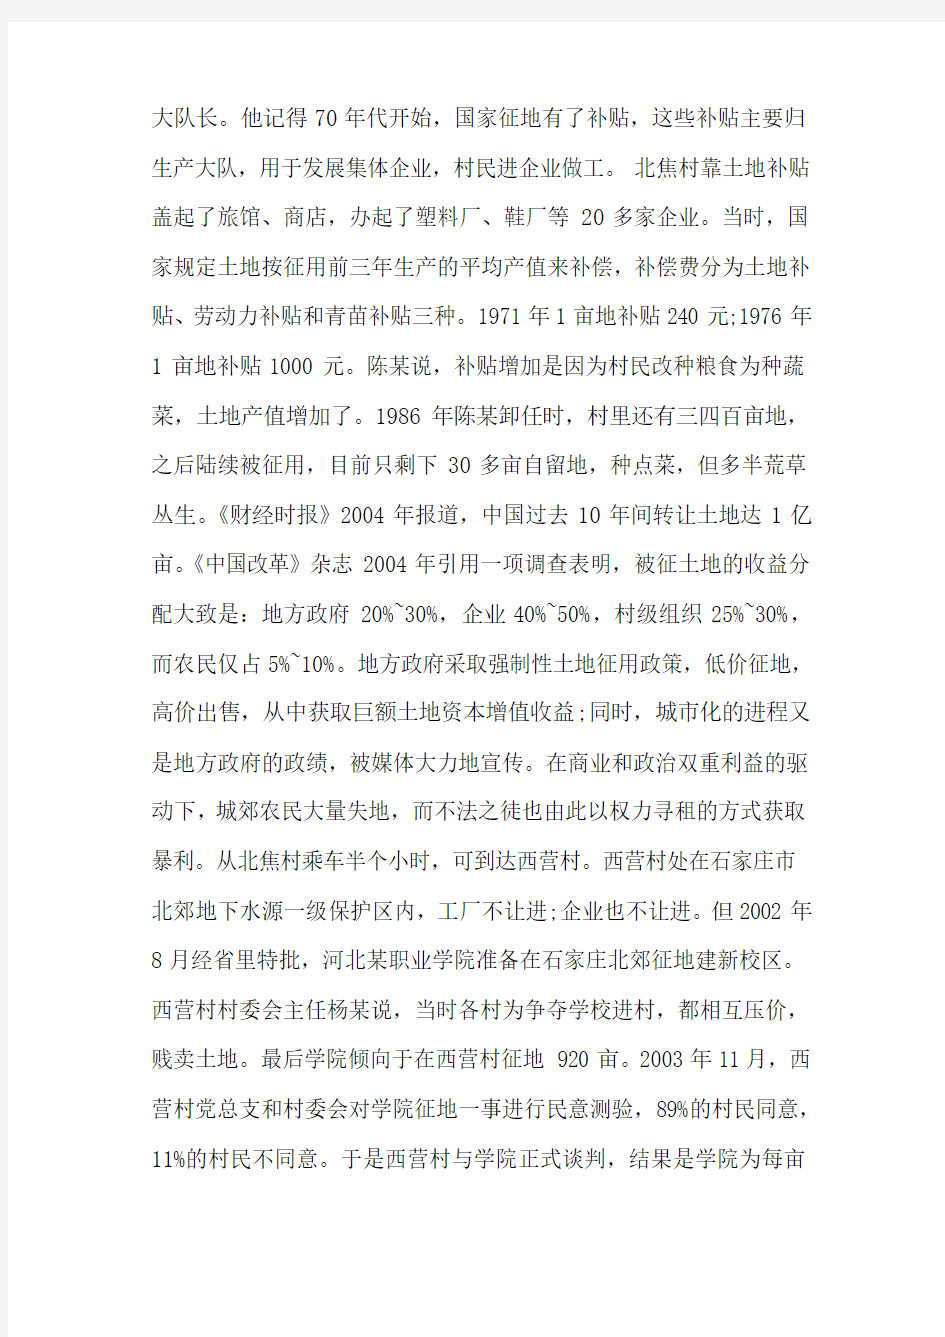 2012年河北省公务员考试申论真题及答案(超长完整详尽版)